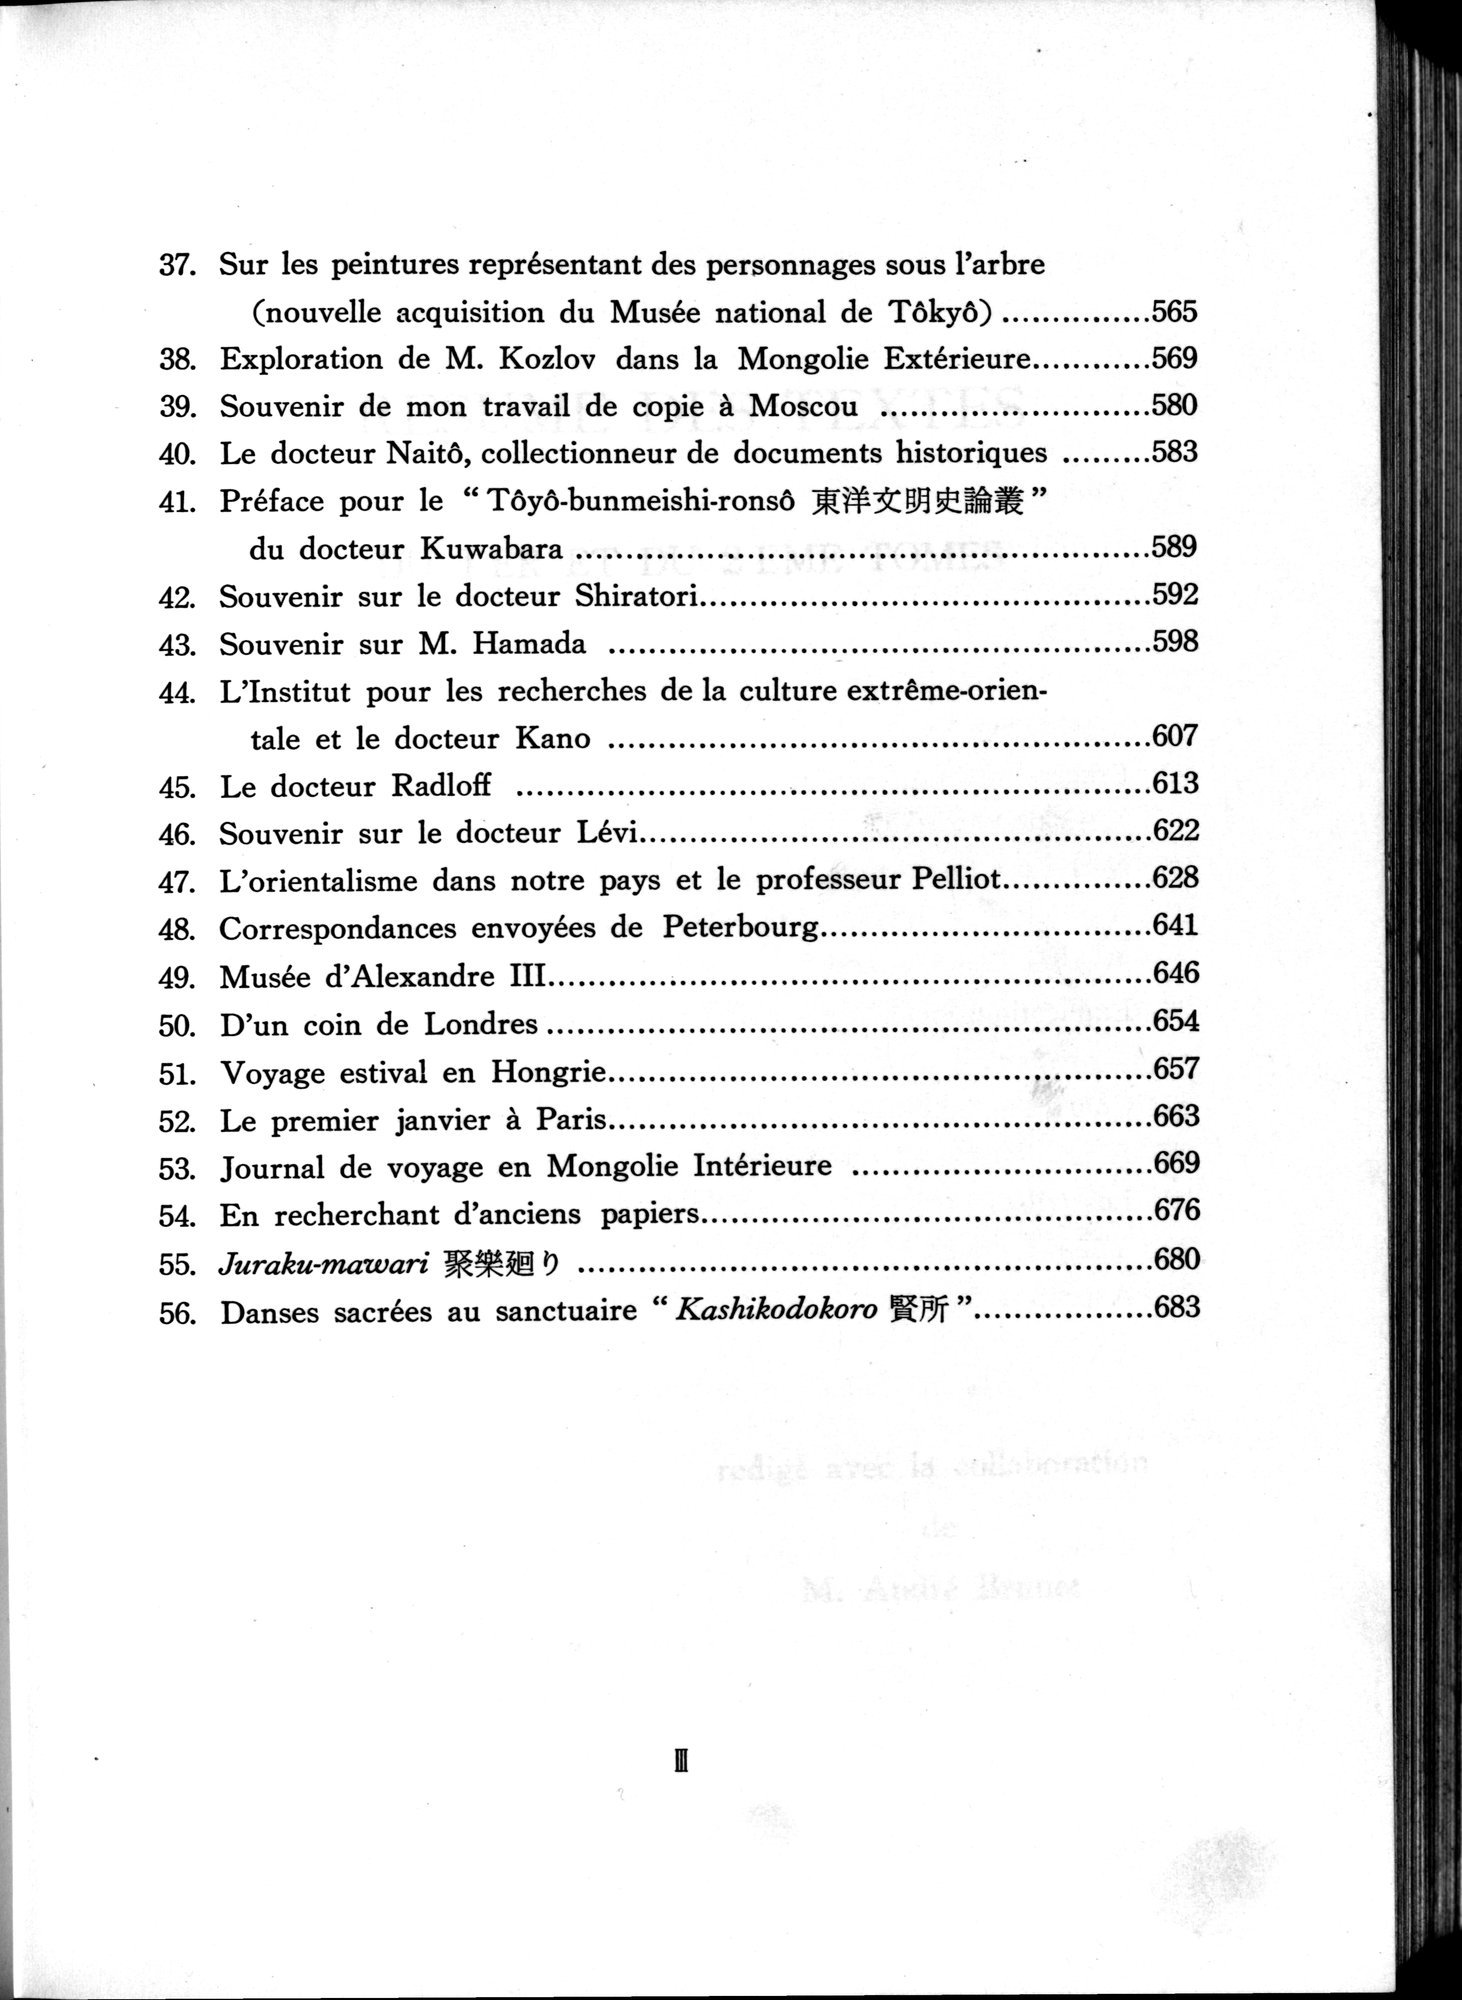 羽田博士史学論文集 : vol.2 / 936 ページ（白黒高解像度画像）